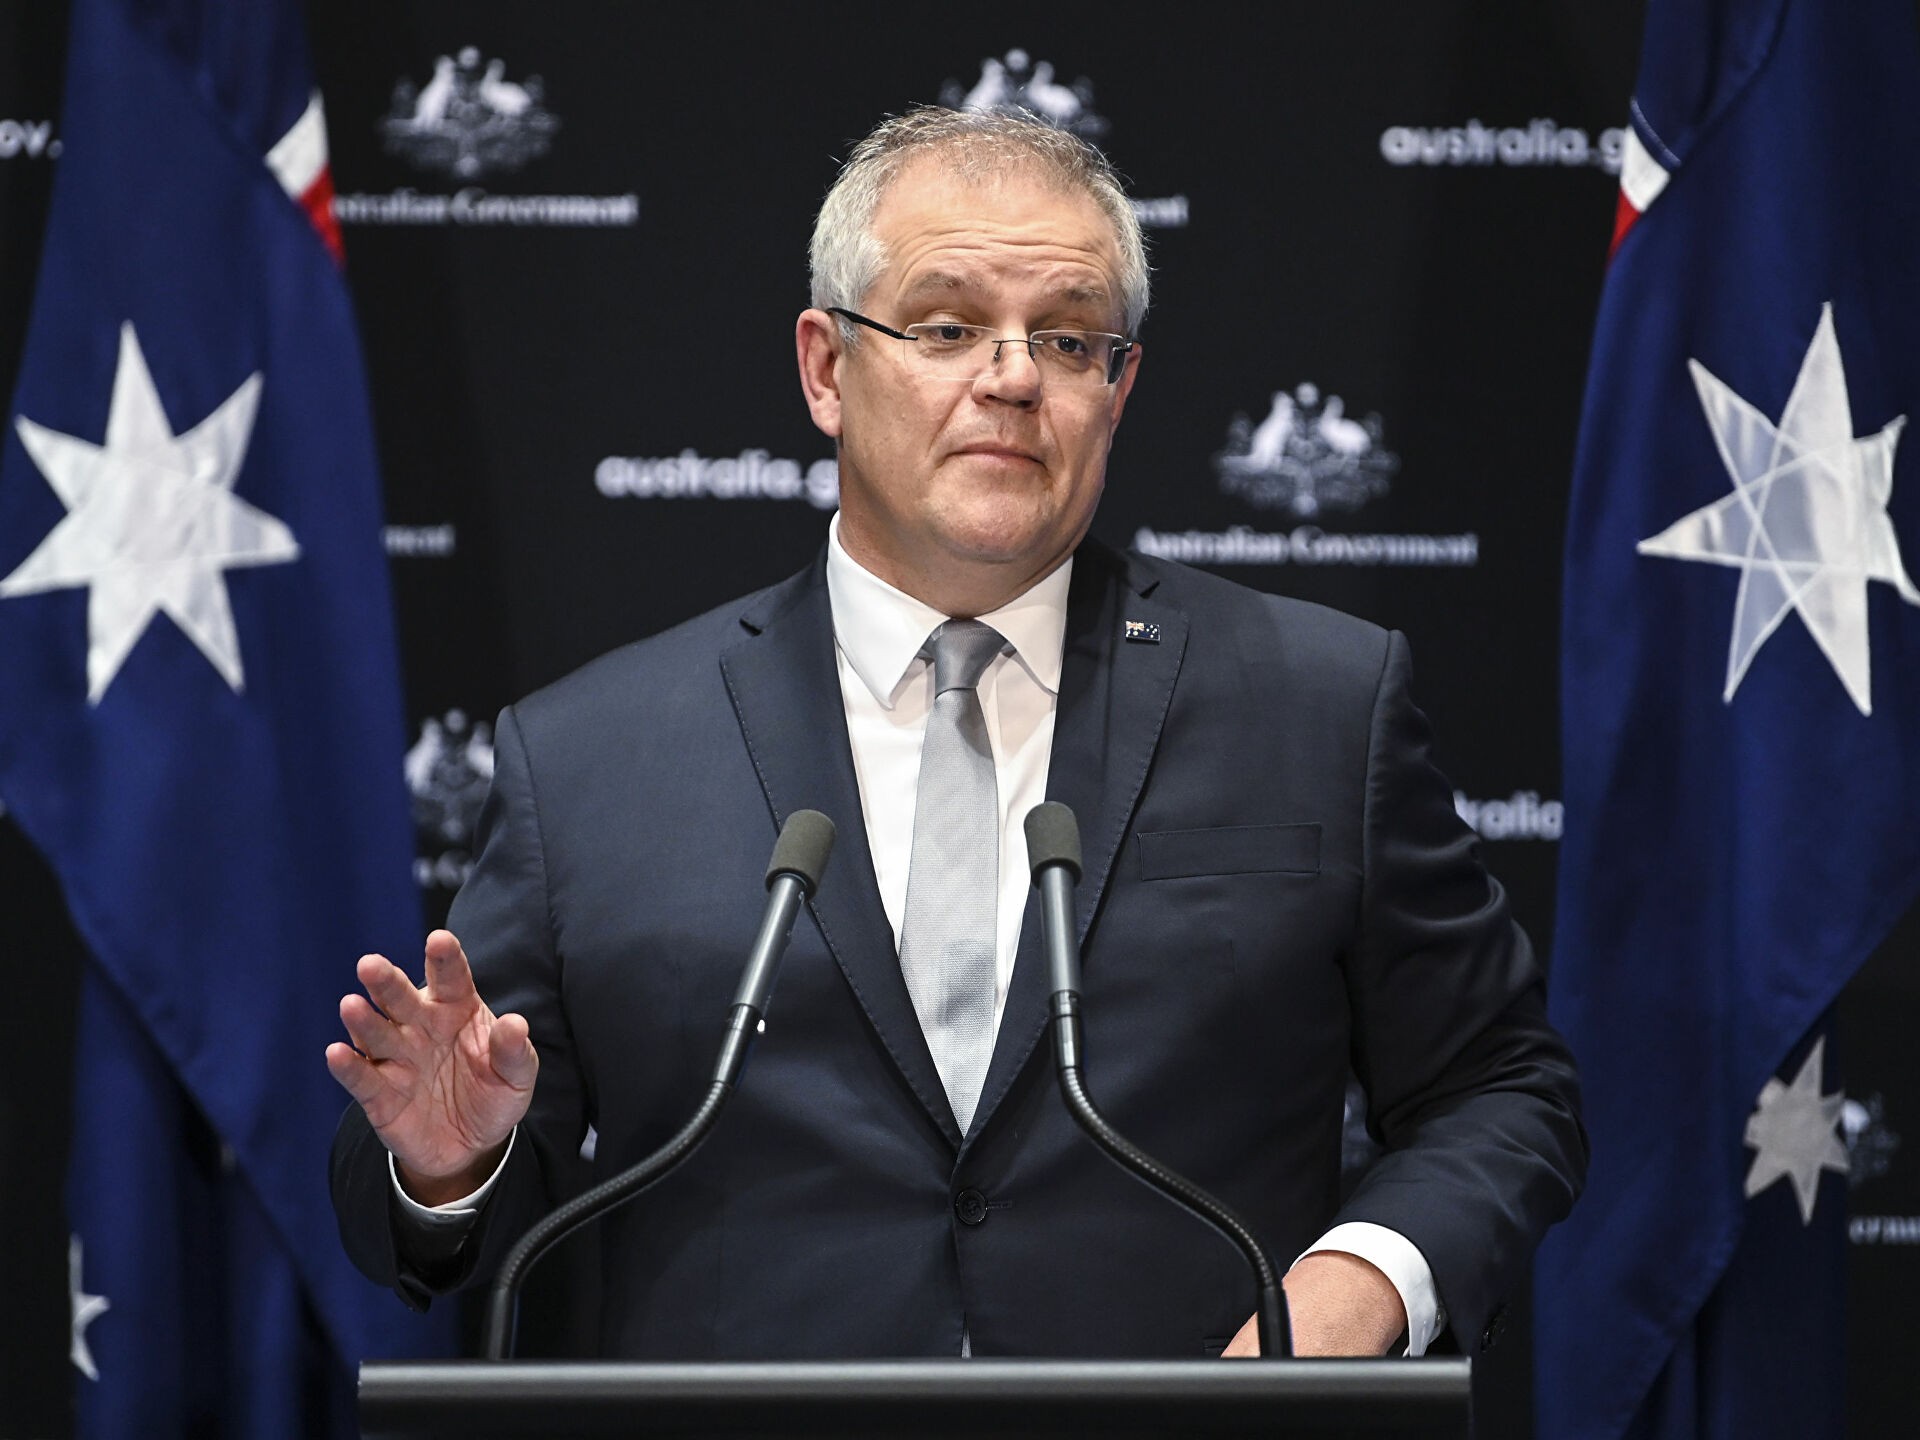 Australia xem xét sớm mở lại biên giới đón du khách quốc tế